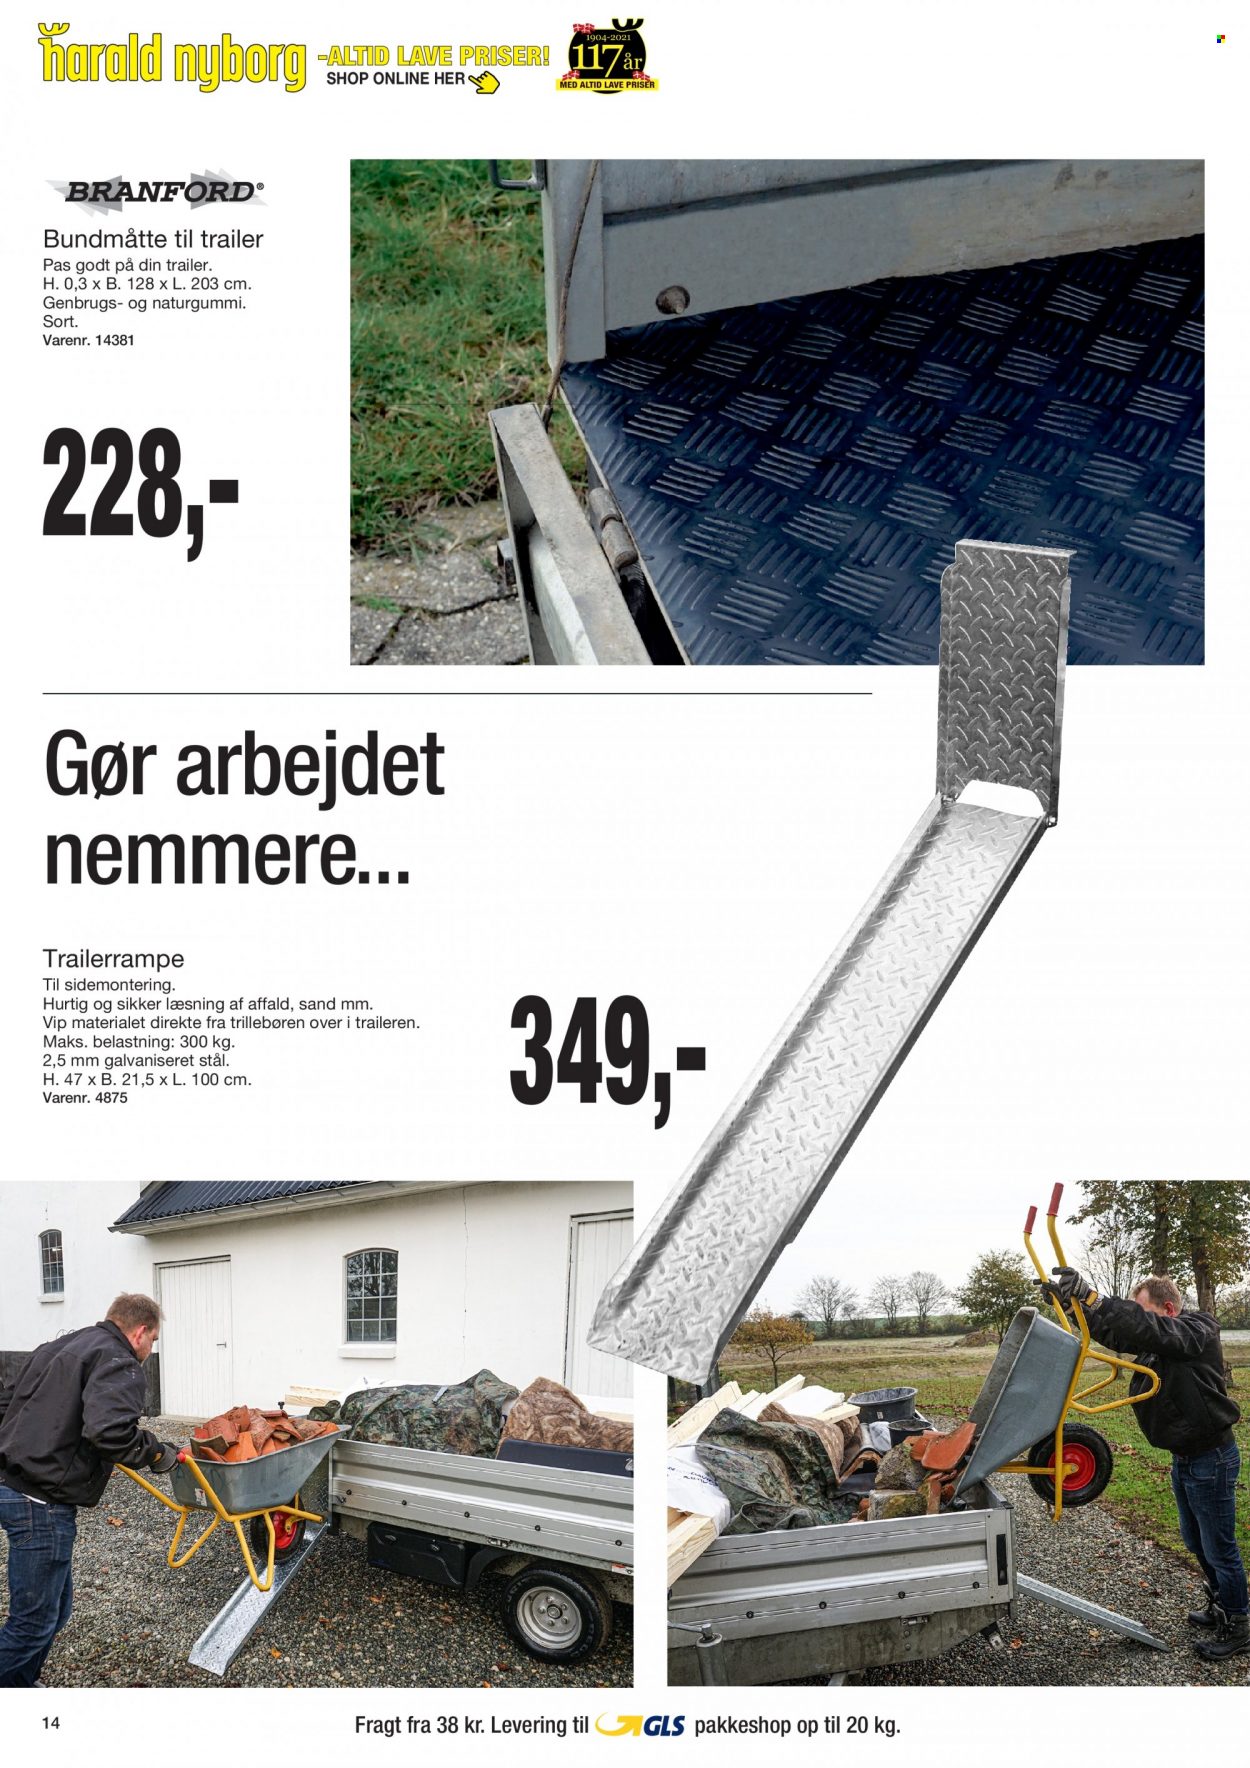 Harald Nyborg tilbudsavis  - 14.10.2021 - 20.10.2021. Side 14.